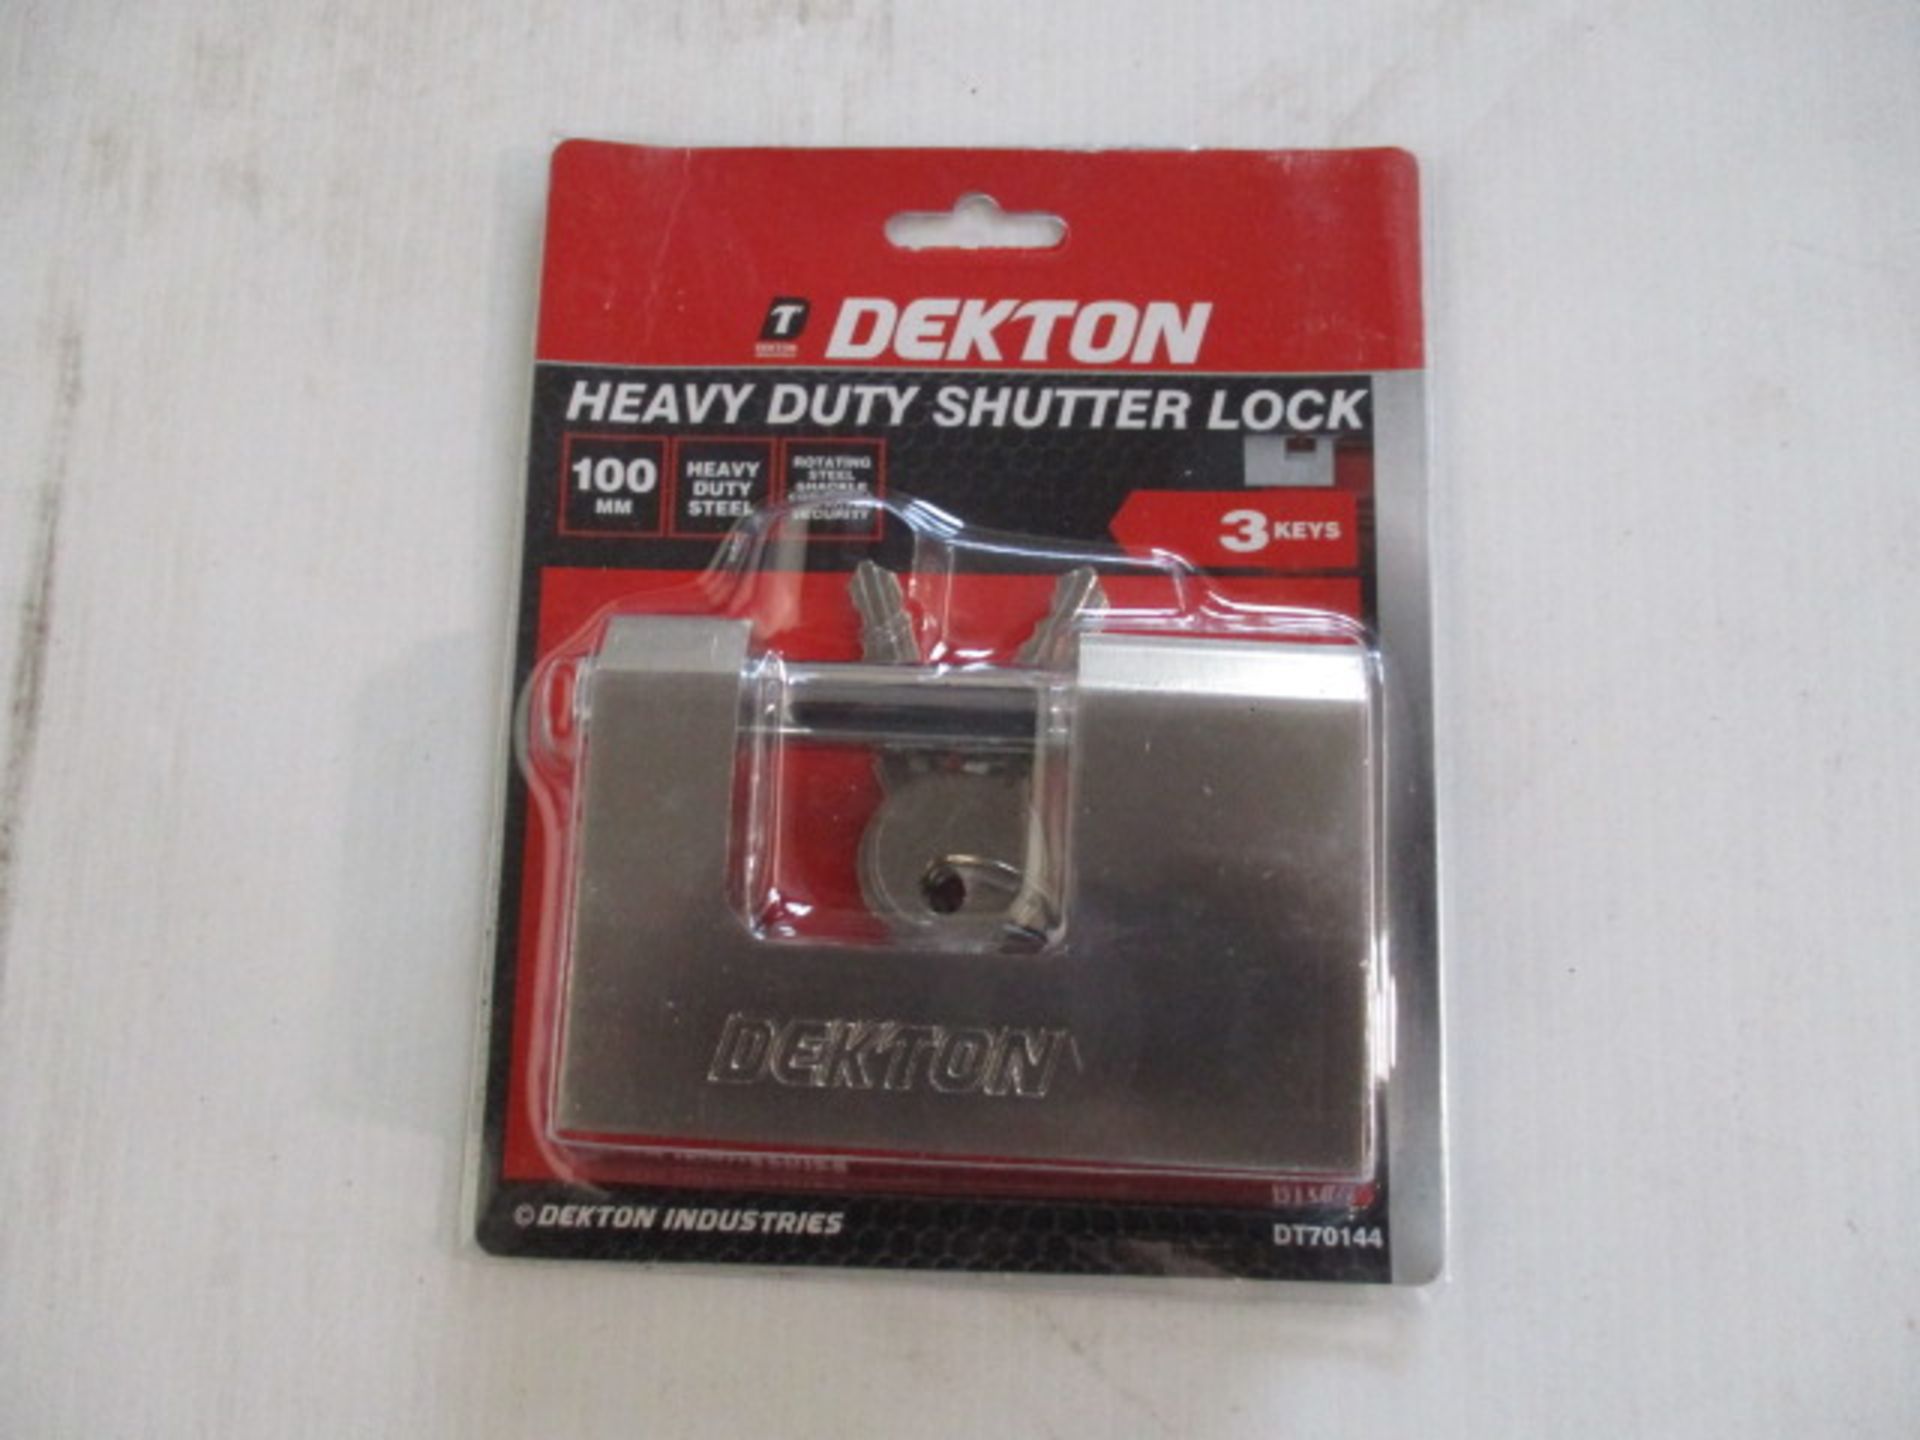 Dekton heavy duty shutter lock new and sealed with 3 keys